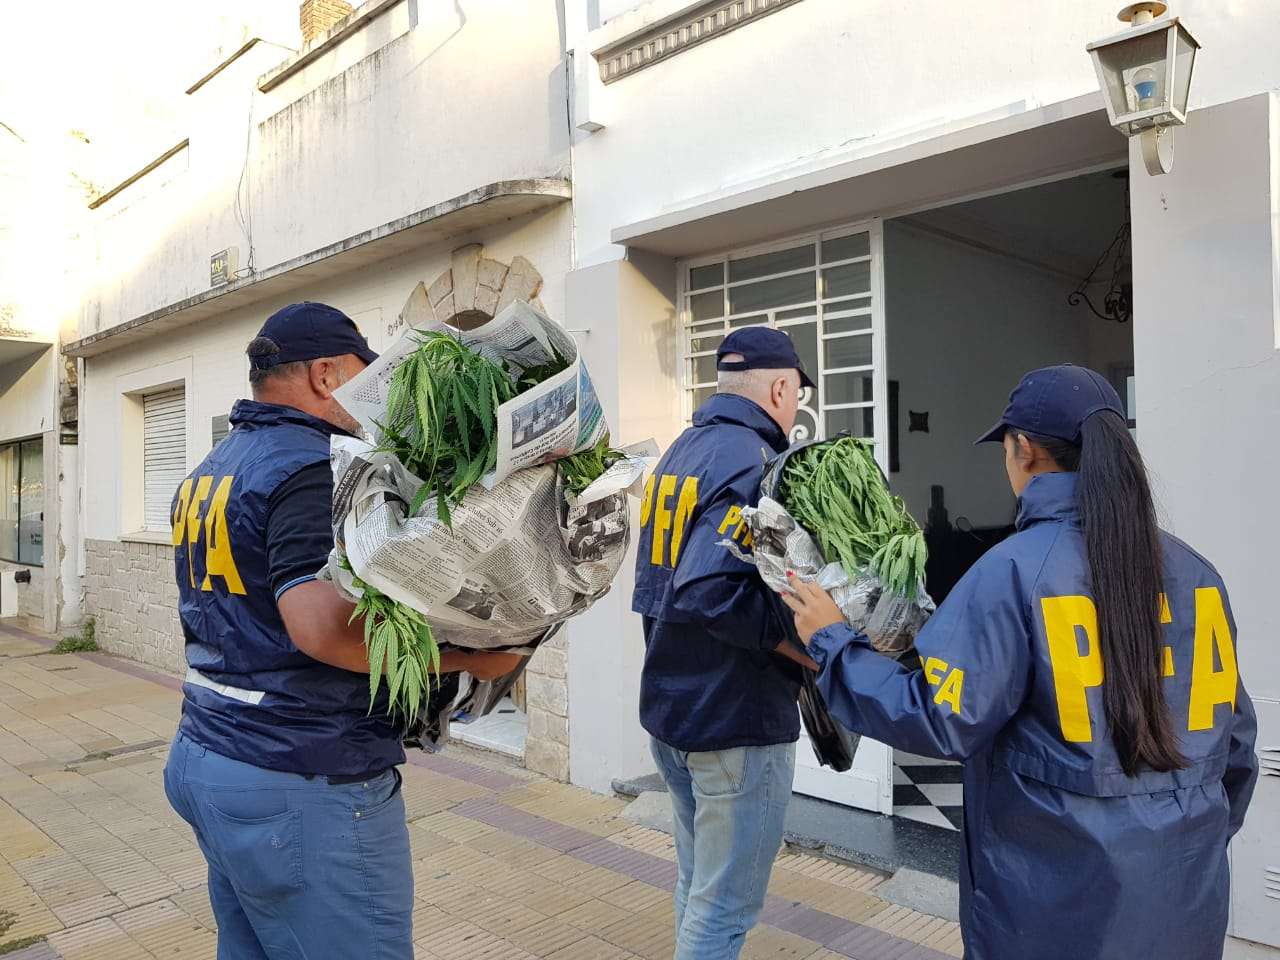 Secuestraron una importante cantidad de plantas de marihuana de una vivienda ubicada en Sarmiento al 200